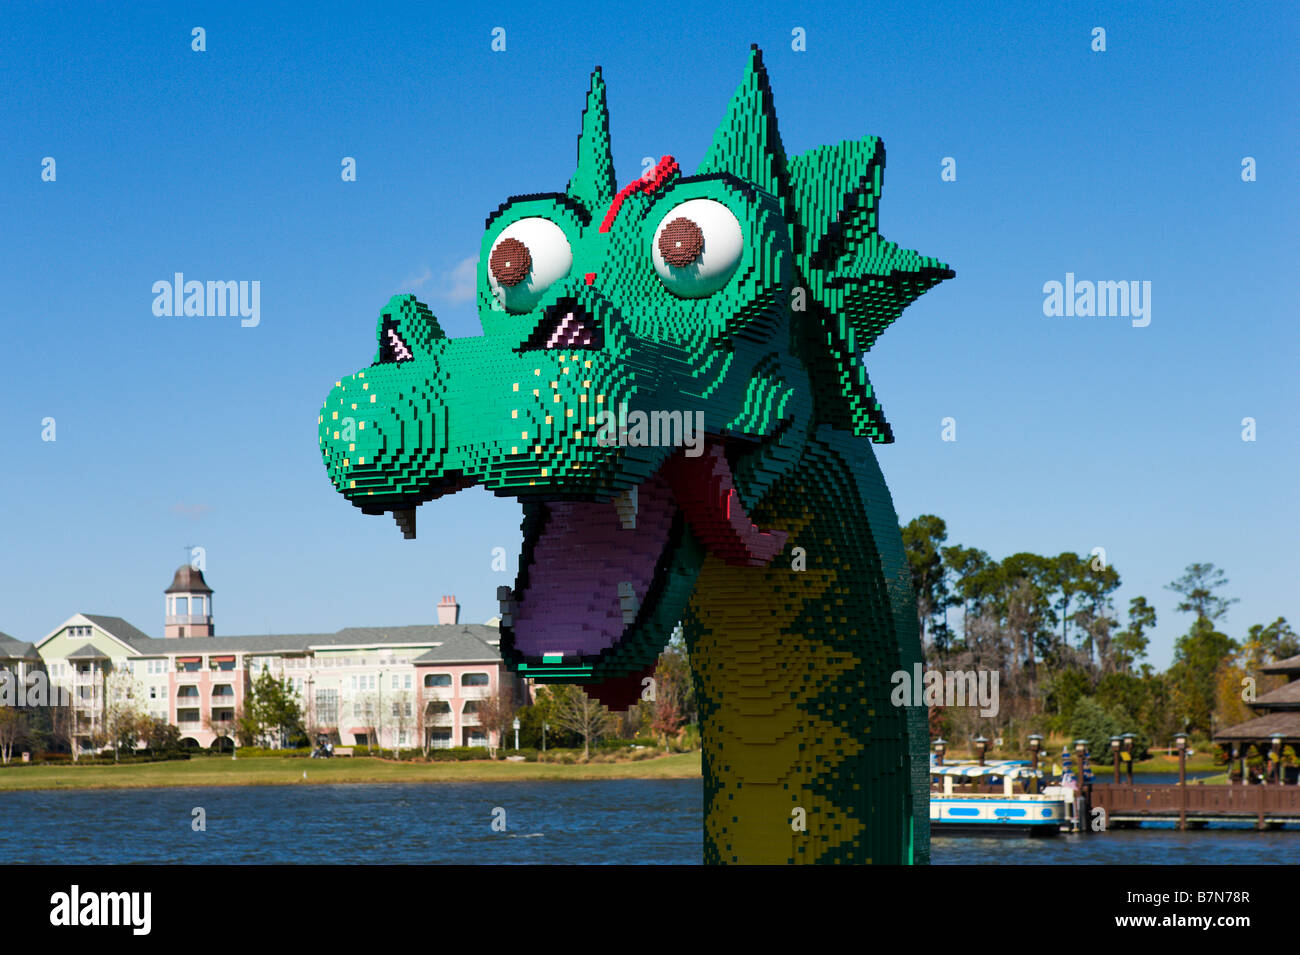 Brickley le serpent de mer de Lego, Downtown Disney, Lake Buena Vista, Orlando, Floride, USA Central Banque D'Images